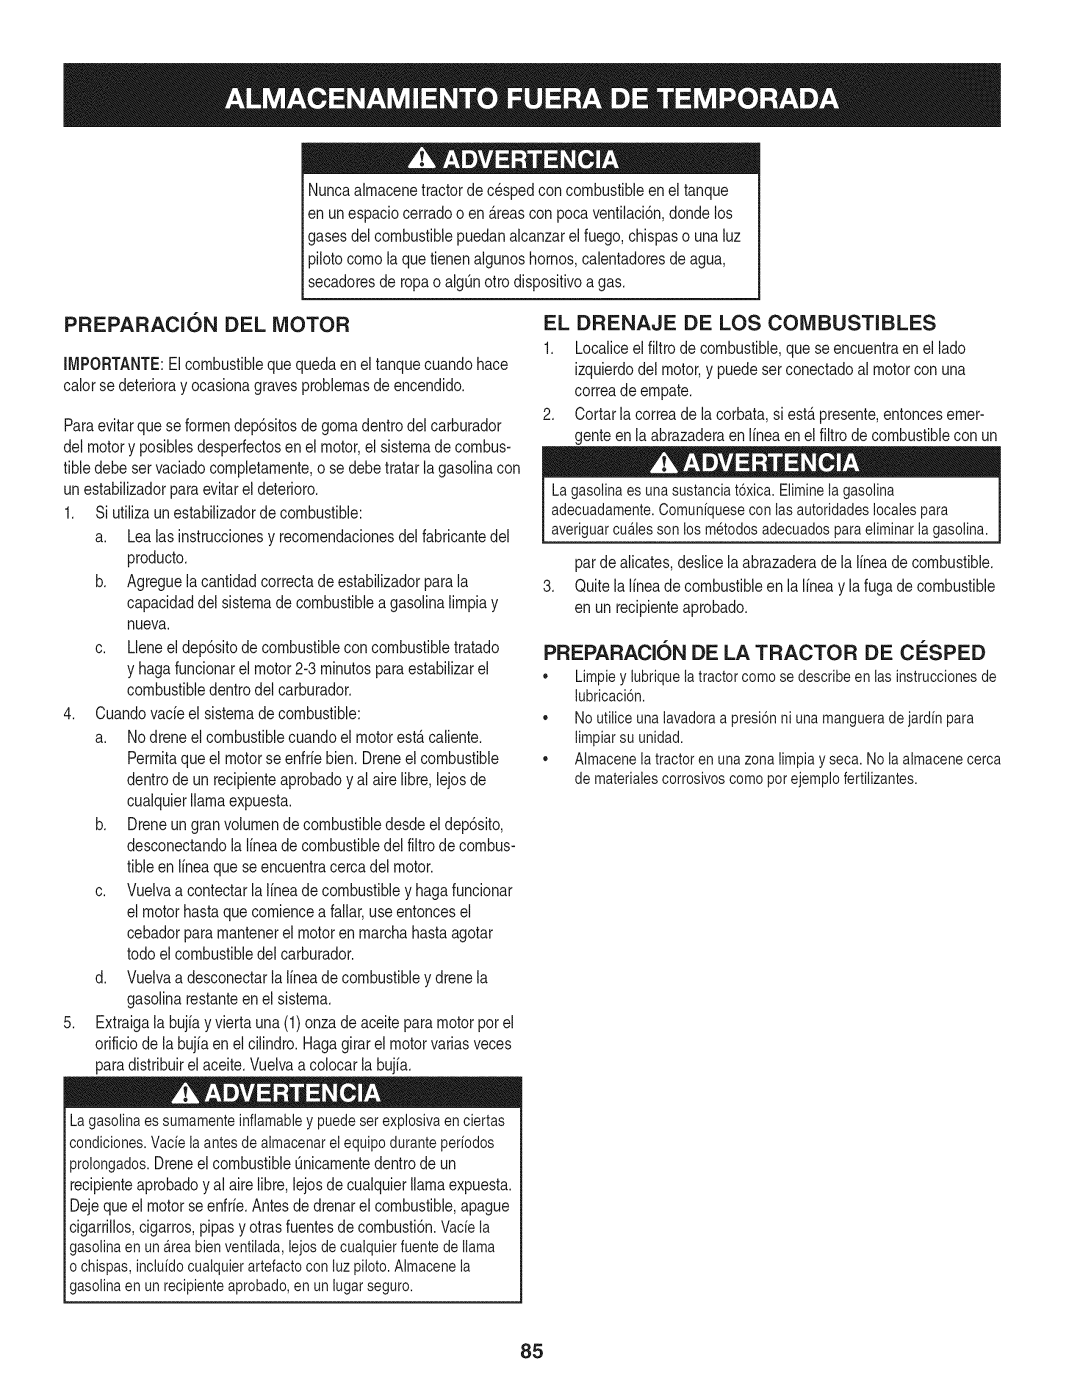 Craftsman 247.28902 manual PREPARACI6N DEL MOTOR, El Drenaje De Los Combustibles, PREPARACI6N DE LA TRACTOR DE CESPED 